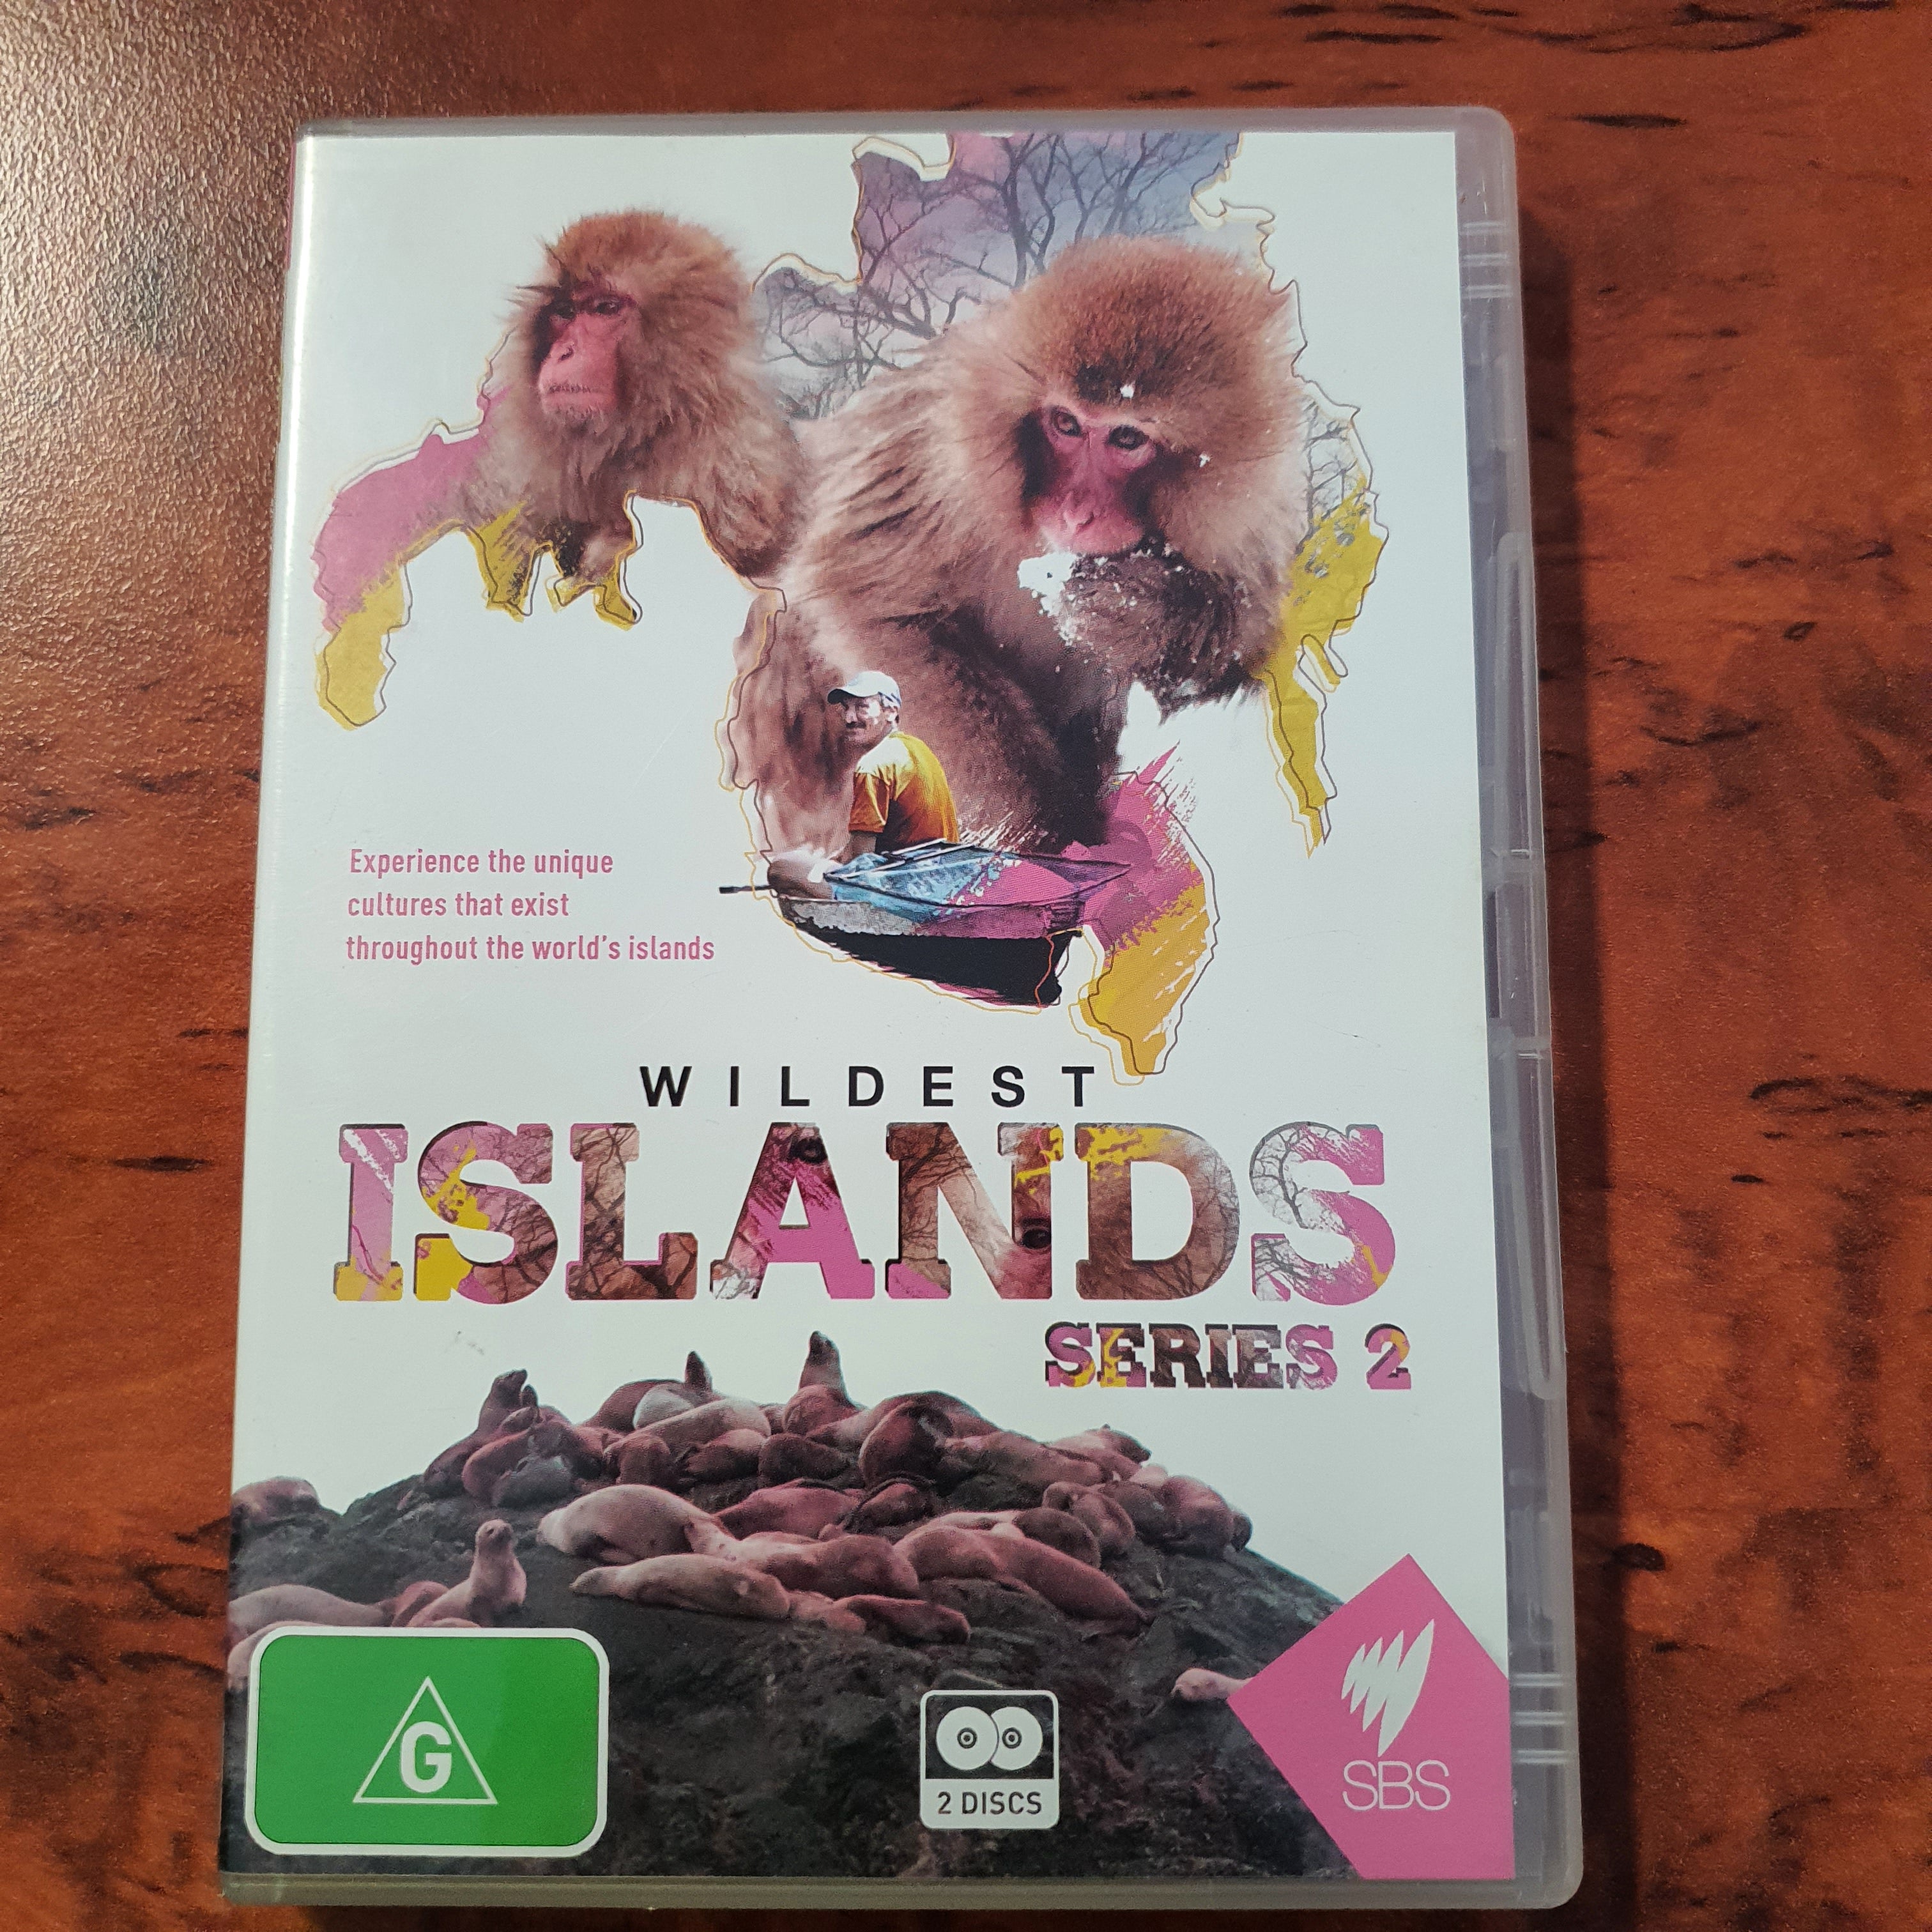 WILDEST ISLAND SERIES 2